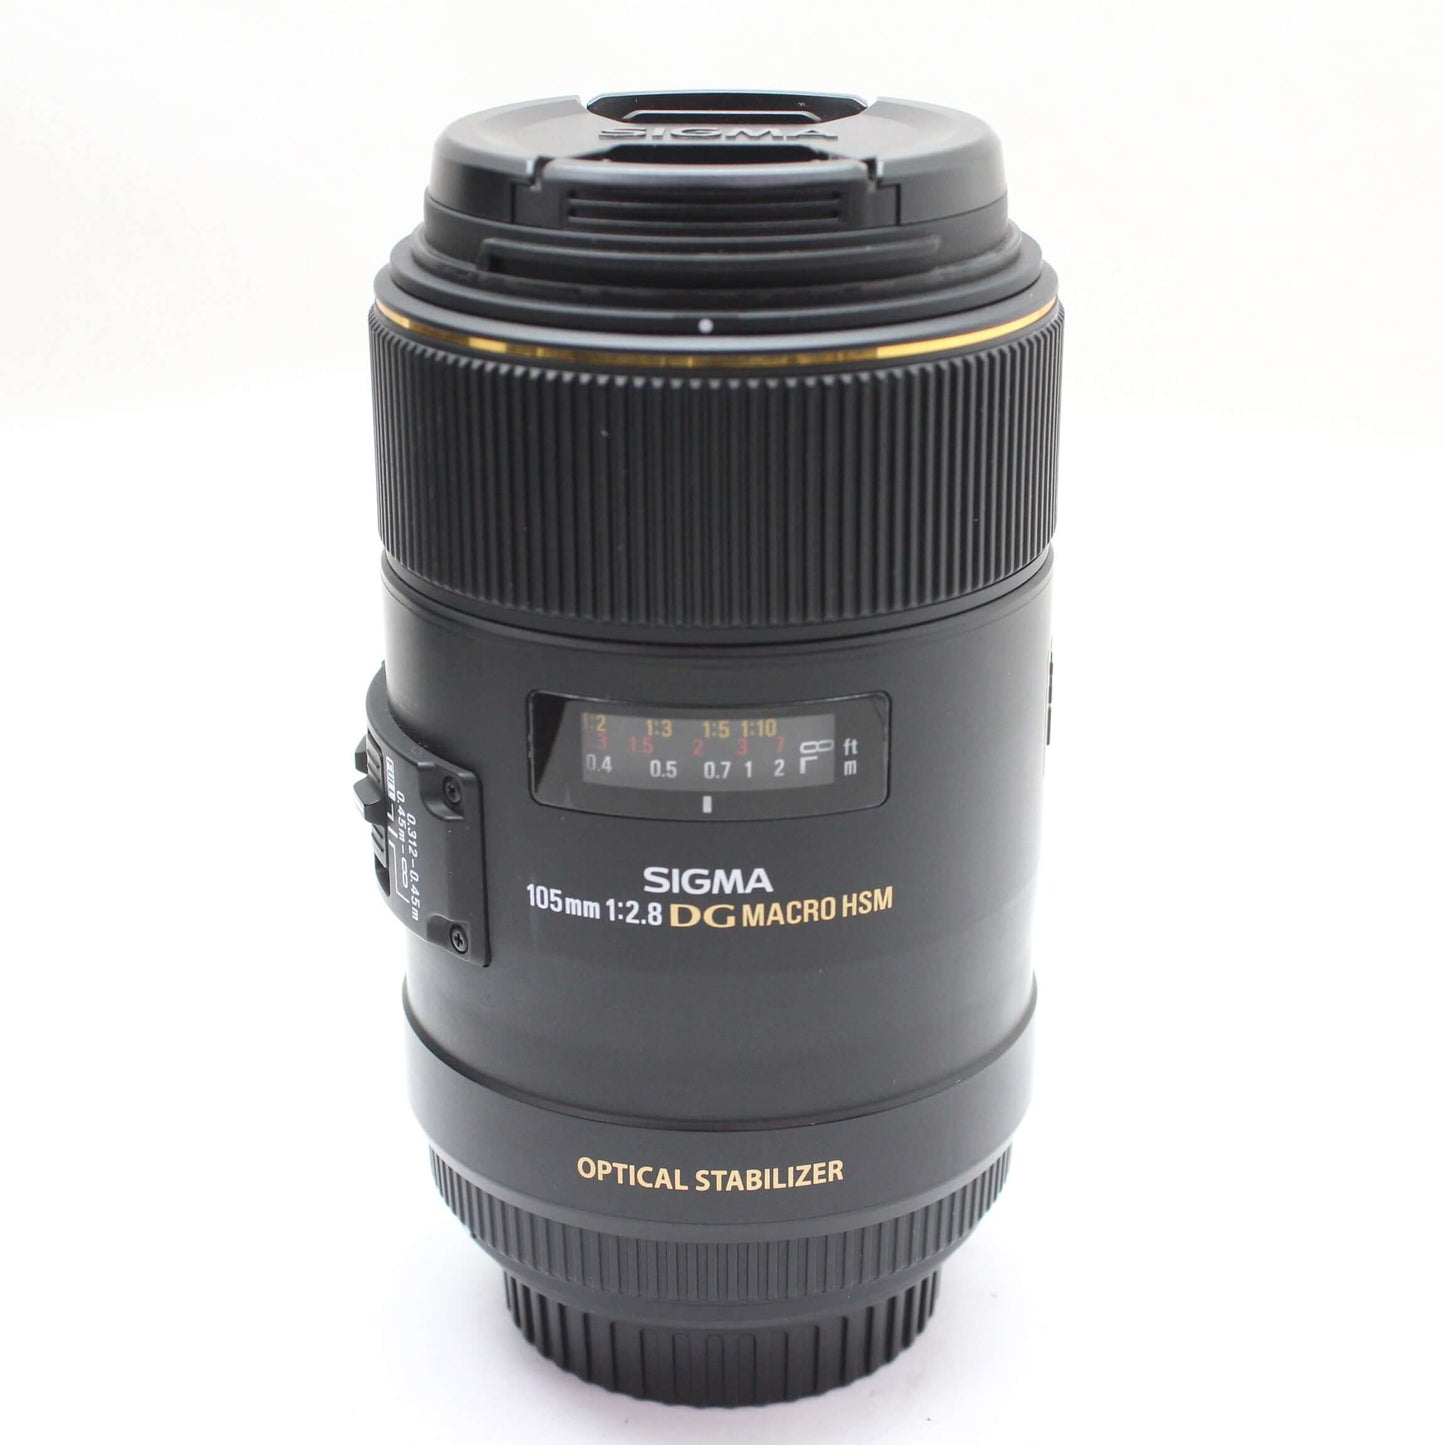 中古品 SIGMA 105mm F2.8 DG MACRO HSM OS Canon用【4月13日(土) youtube生配信でご紹介】